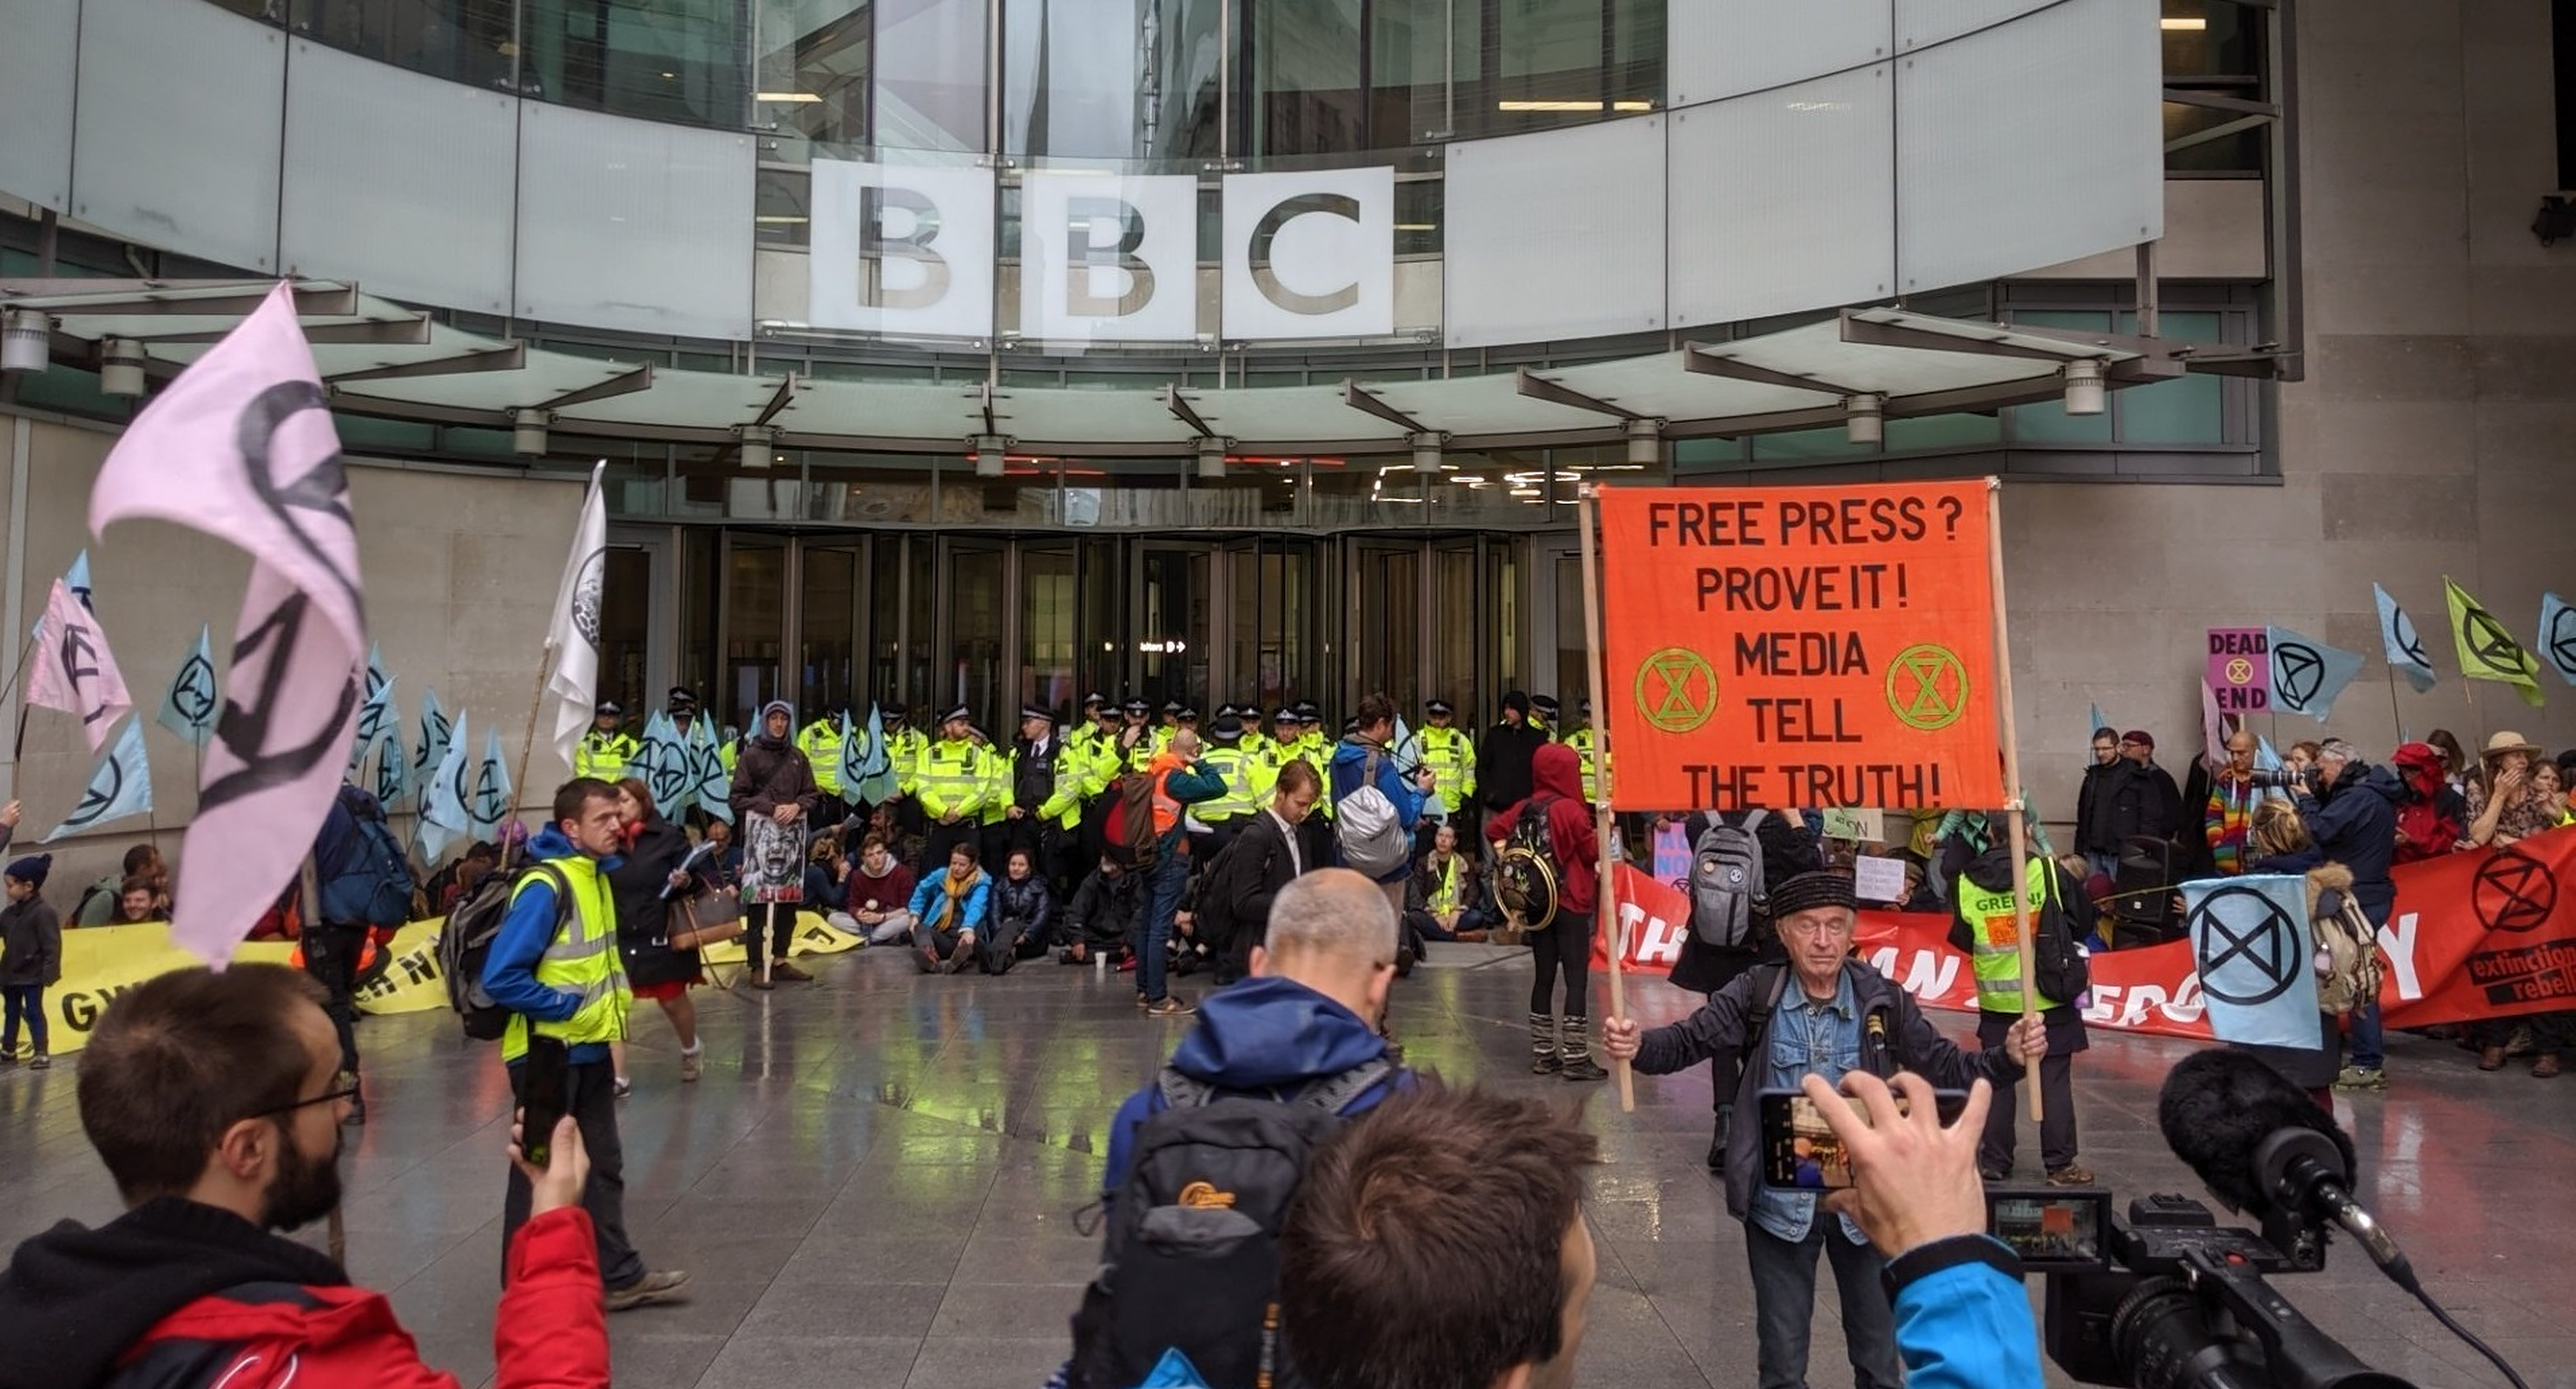 BBC ocupă locul trei pe lista organizațiilor antisemite, după Iran și gruparea teroristă Hamas